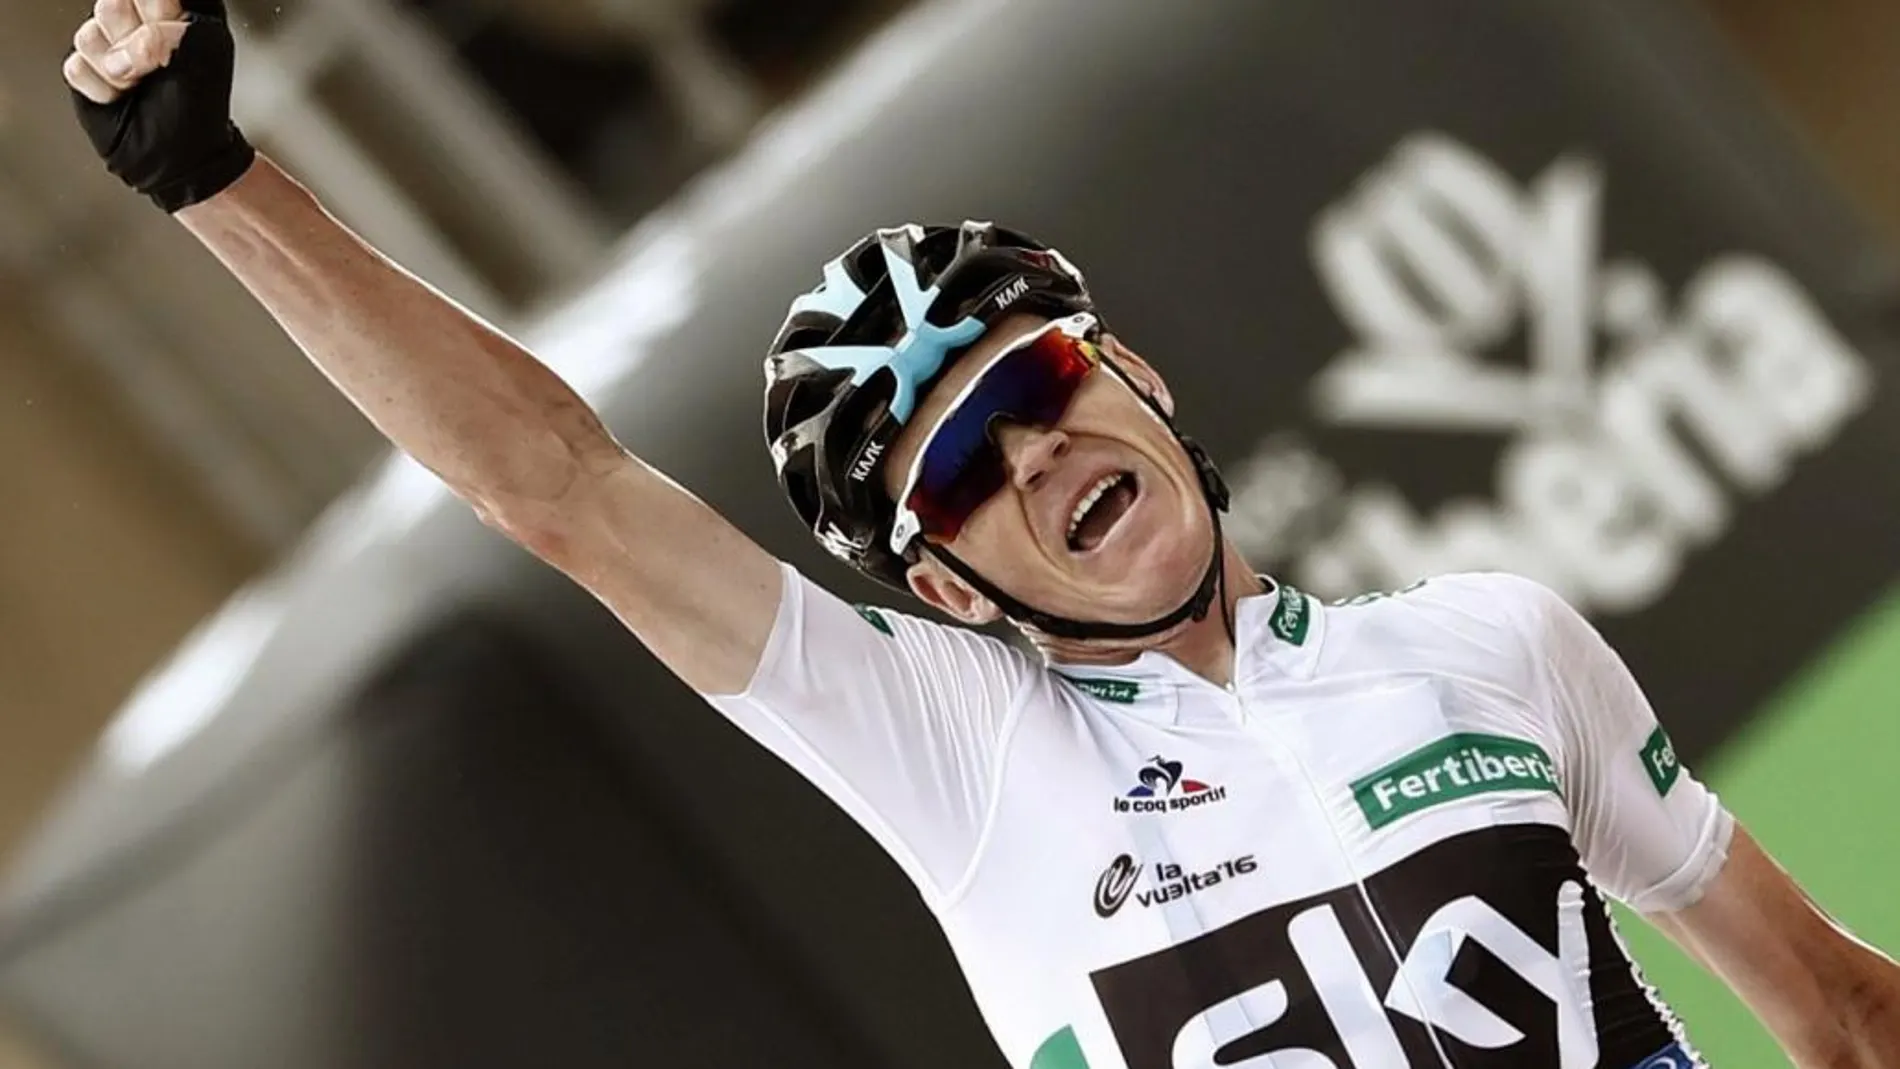 El ciclista británico del equipo Sky, Chris Froome se ha proclamado el vencedor de la undécima etapa de la Vuelta Ciclista a España 2016